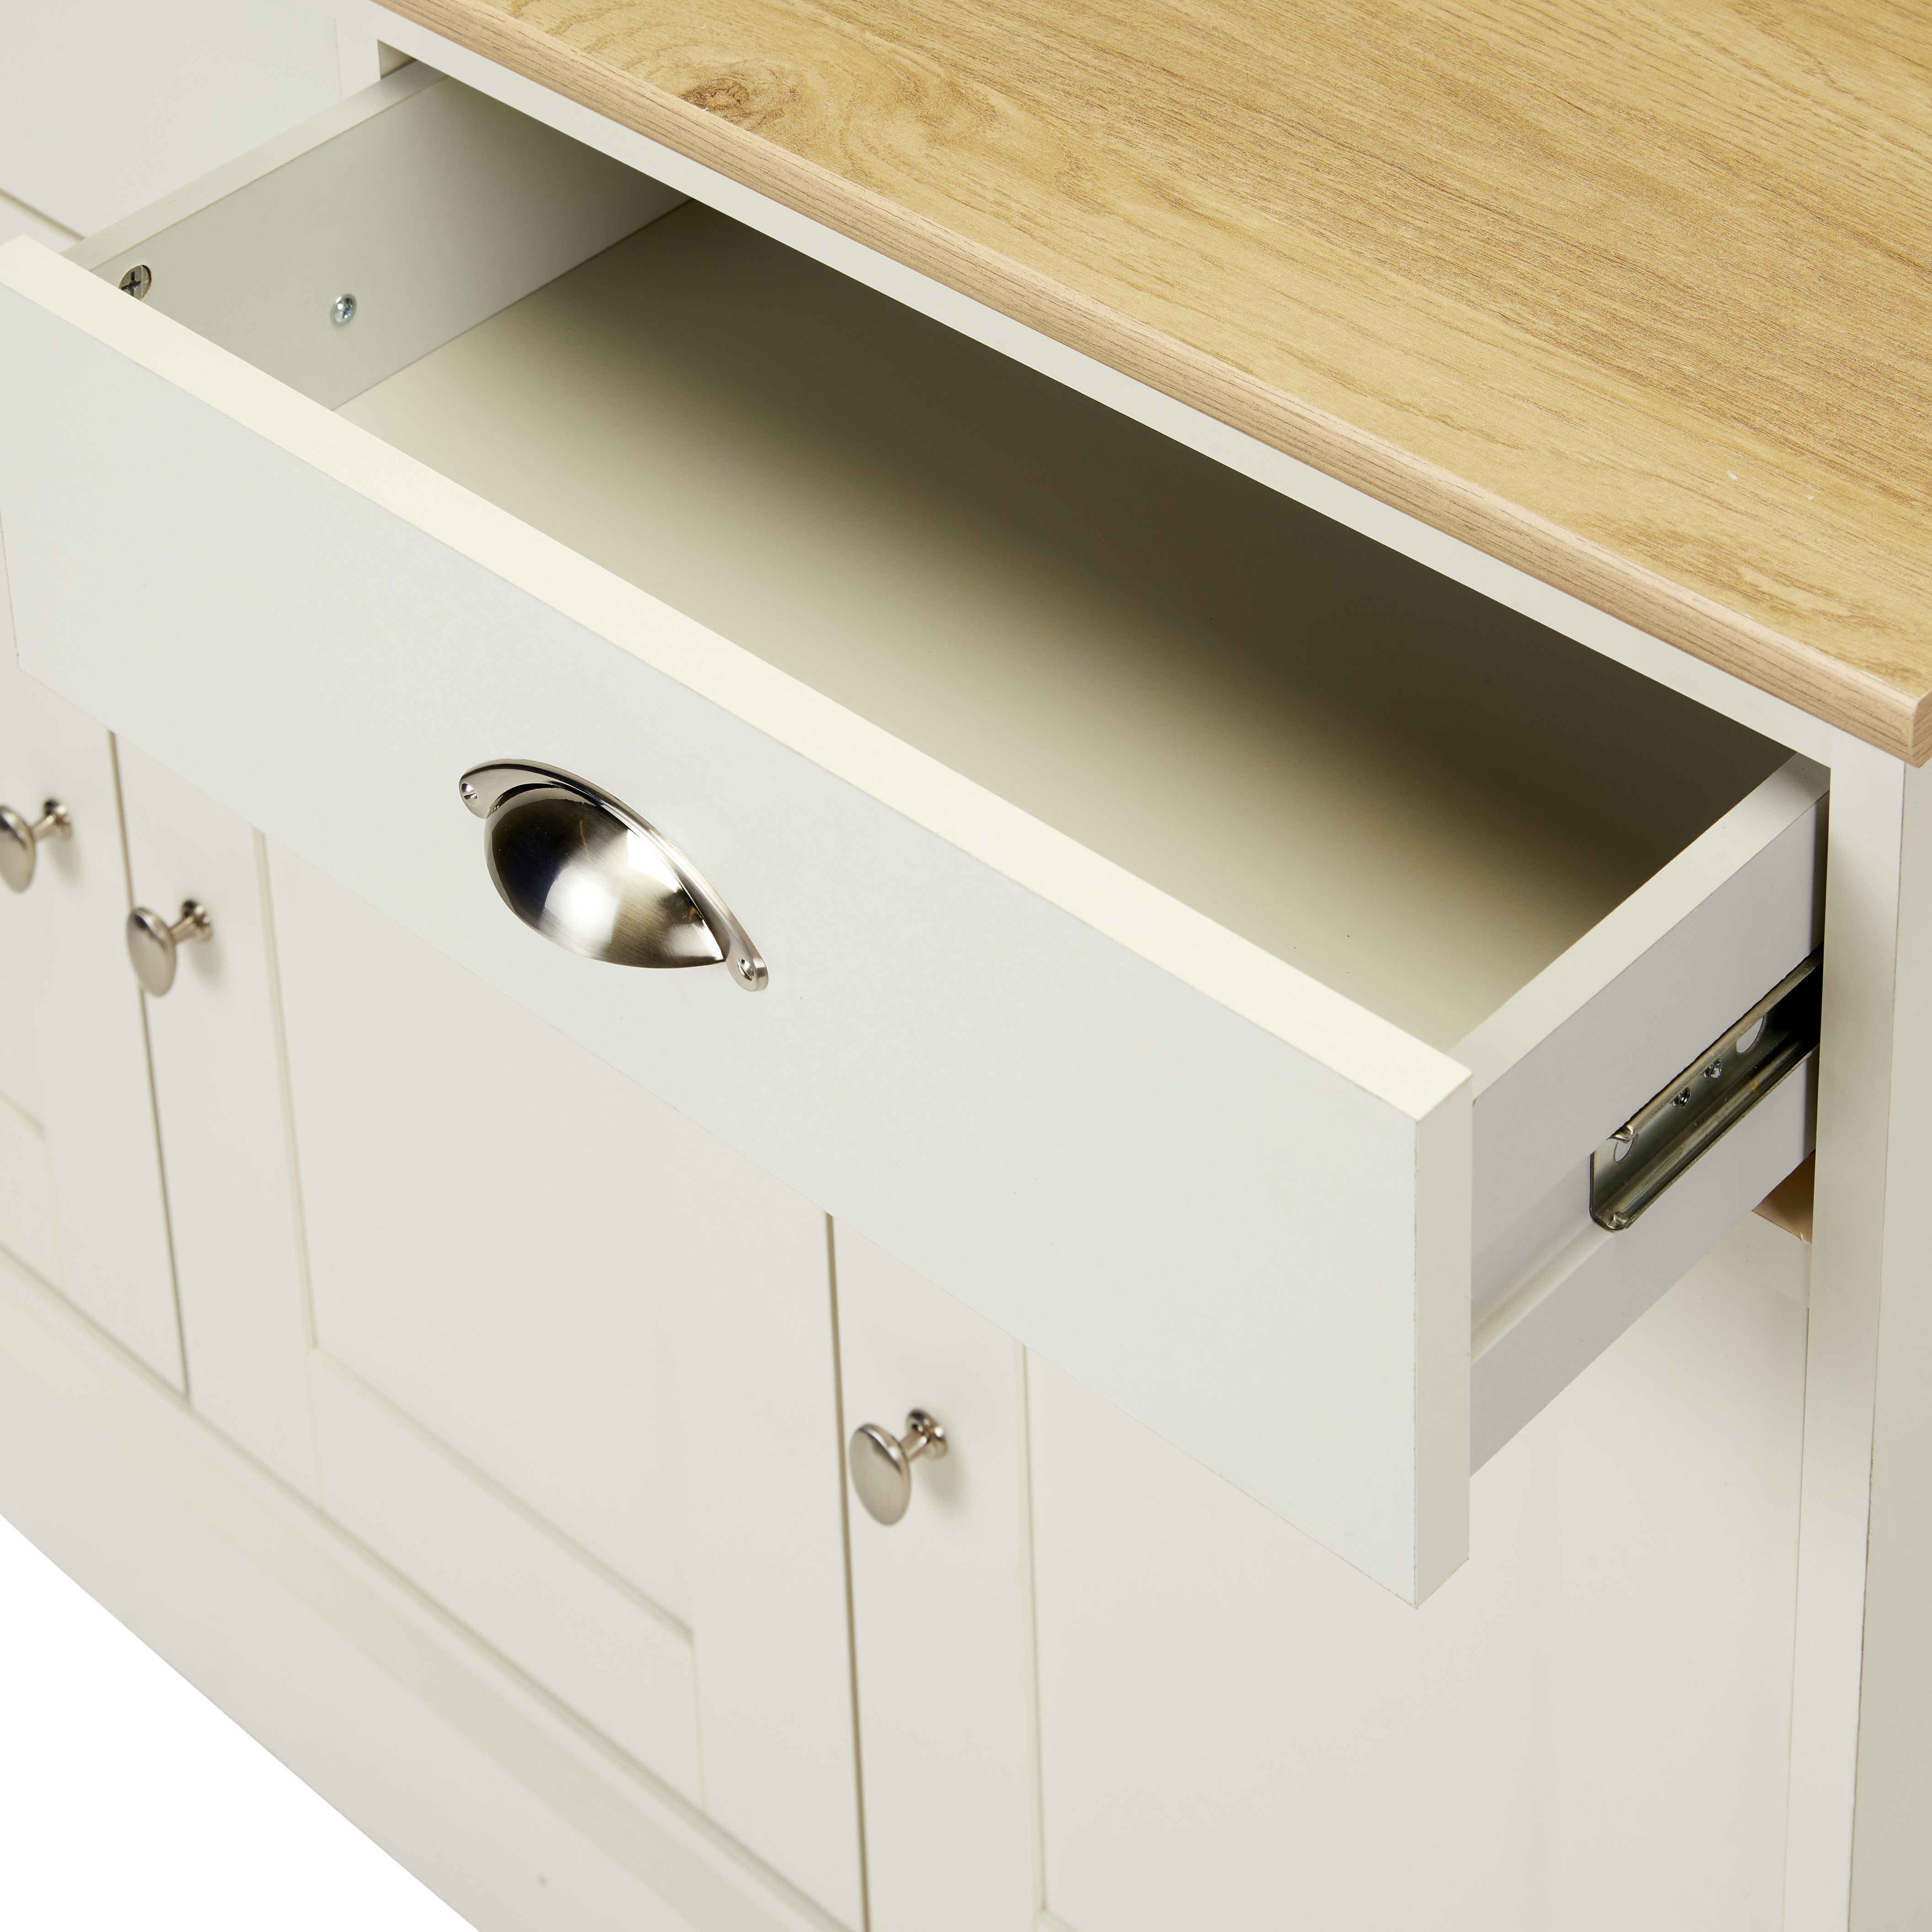 Letvica Matt white light oak effect 2 drawer Shaker Sideboard (H)771mm (W)1067mm (D)408mm